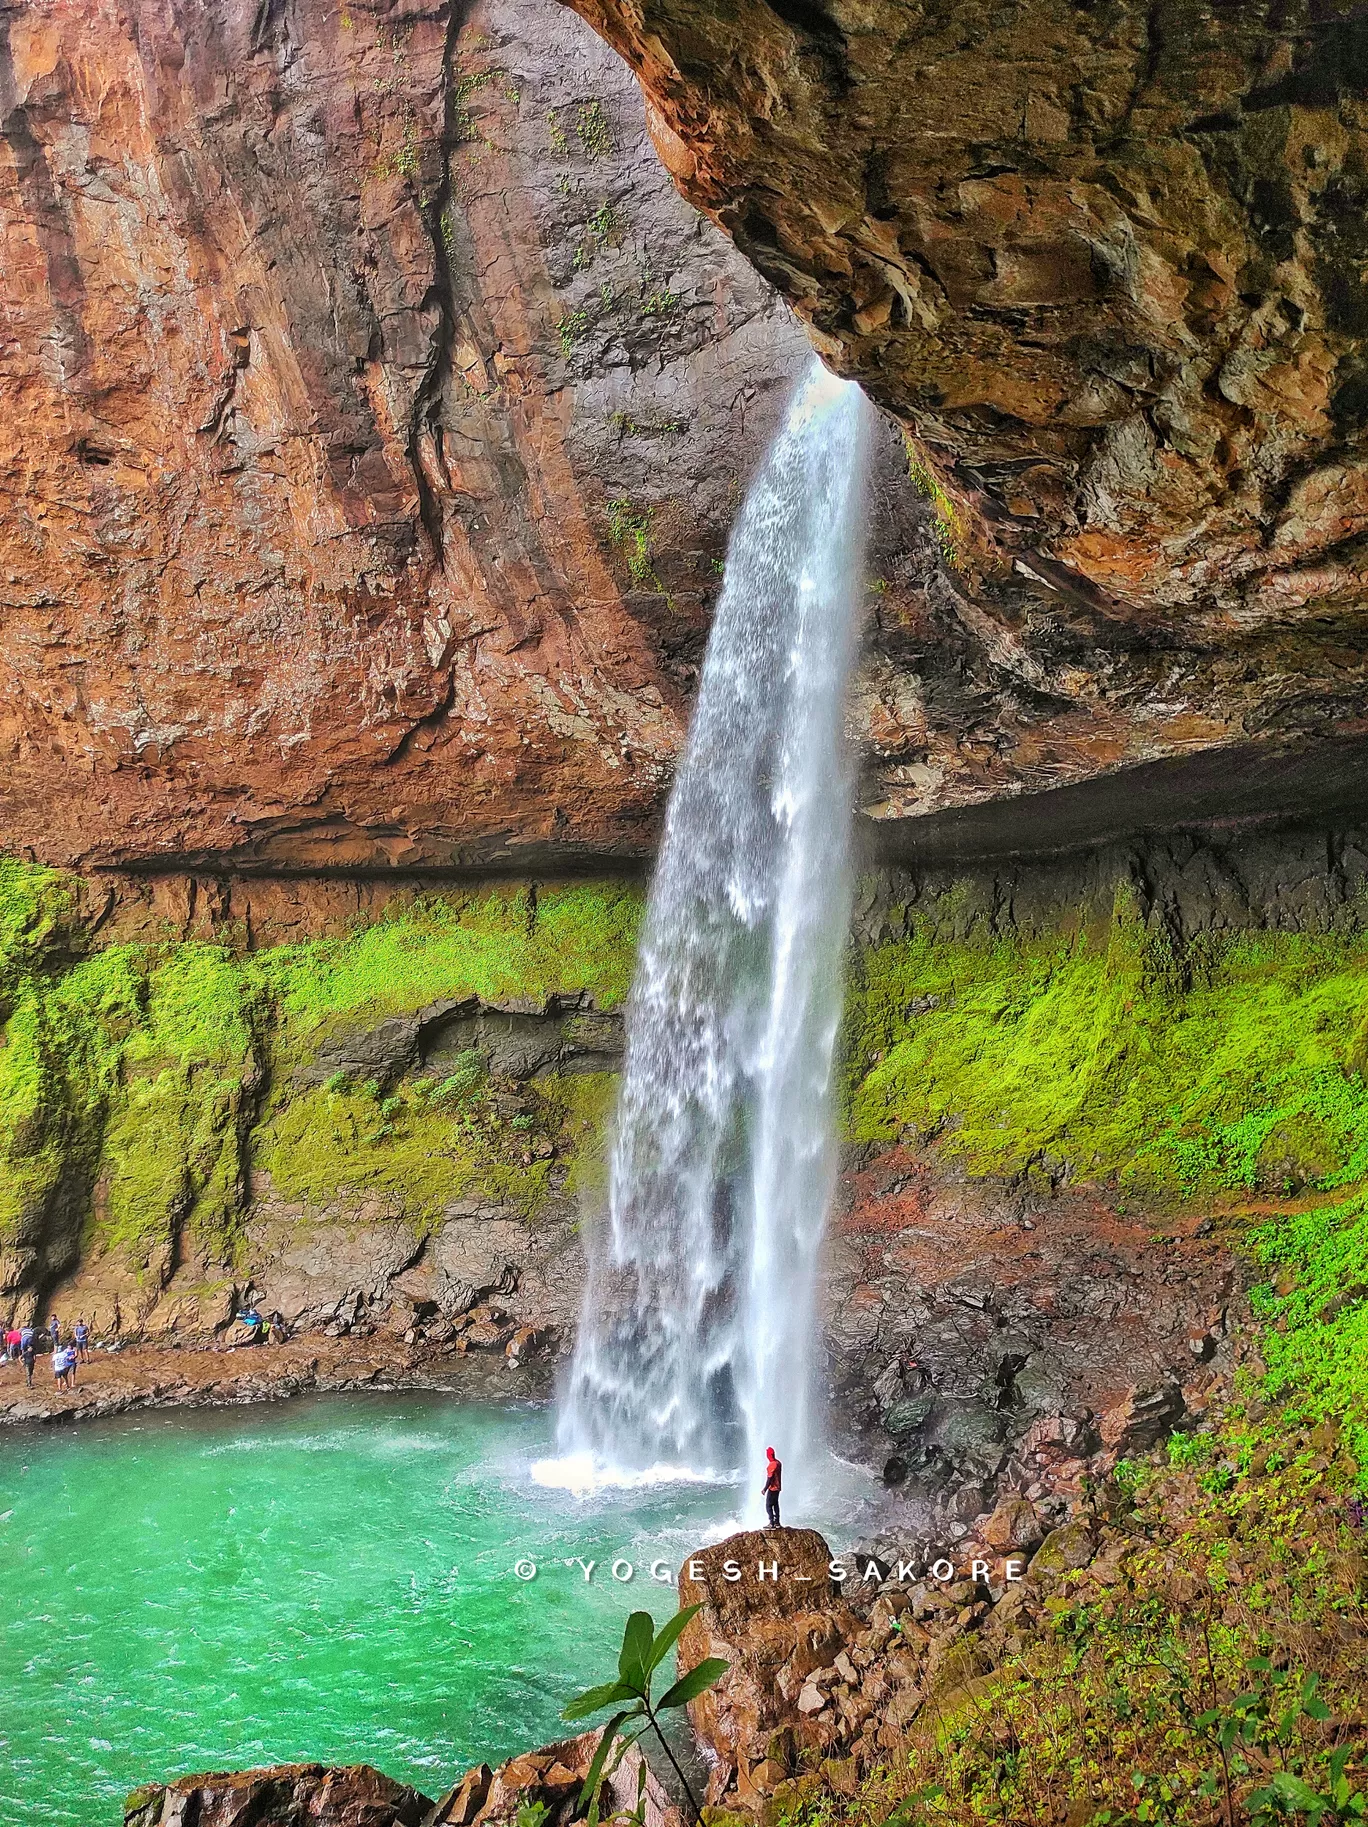 Photo of Devkund Waterfall By Yogesh sakore